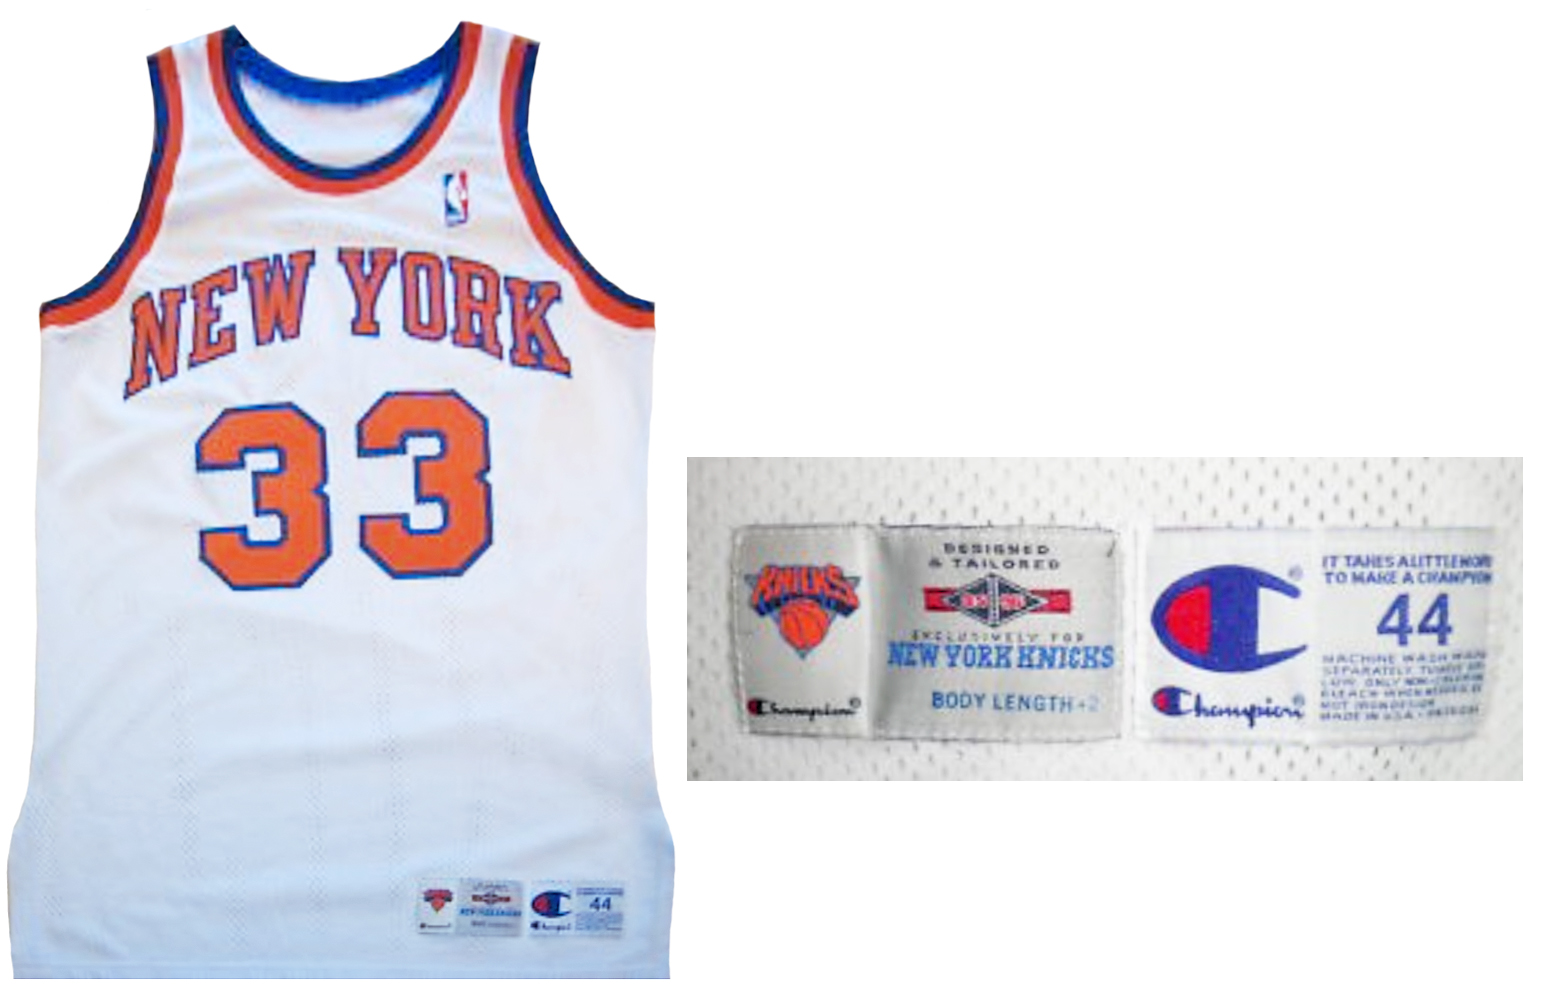 Patrick Ewing New York Knicks Champion Pro-Cut Jersey 1995-1996 FAKE